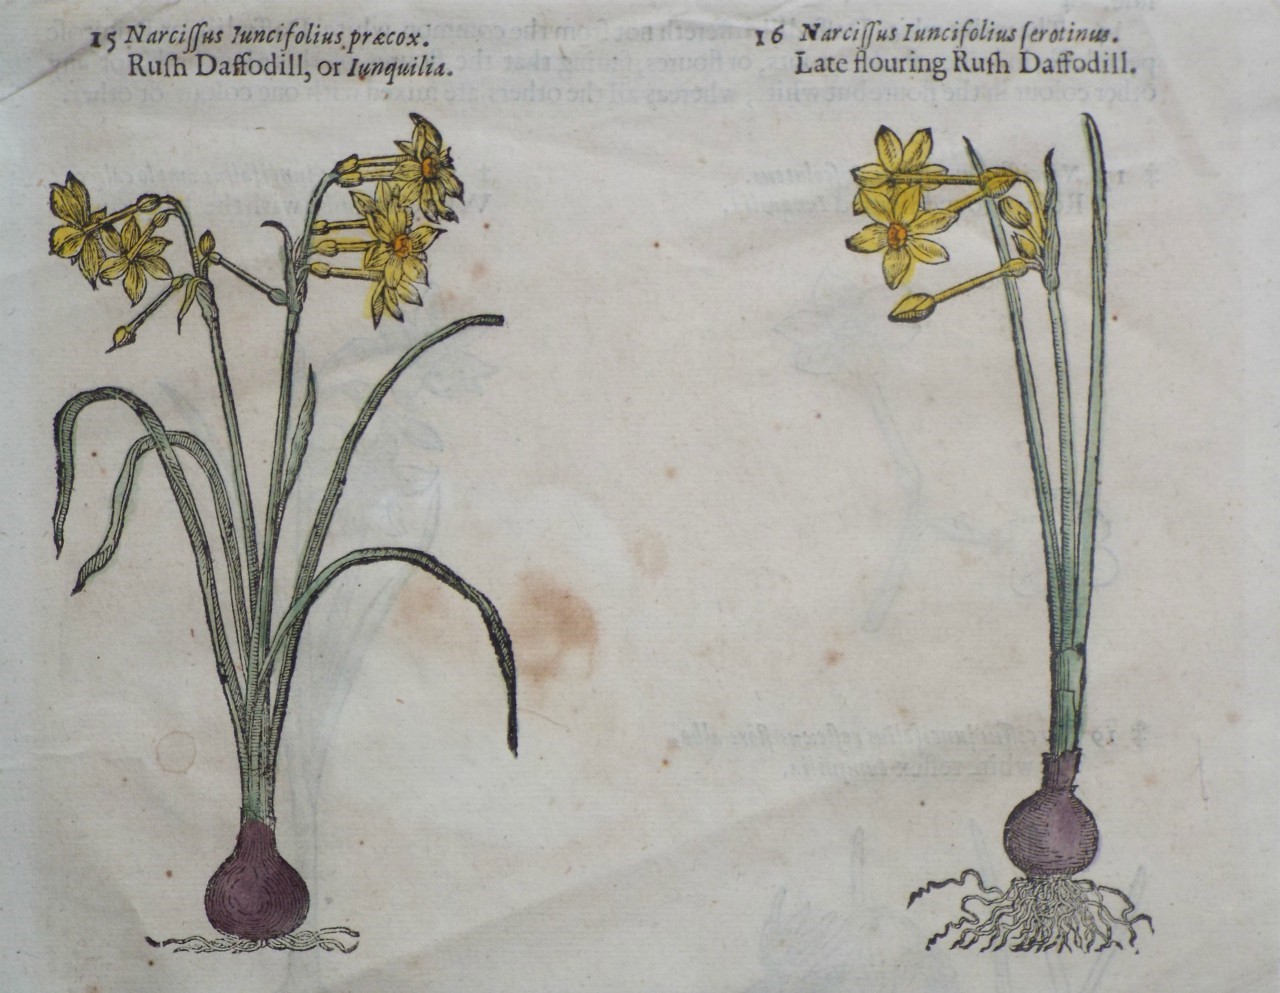 Woodcut - 15 Narcissus Iuncifolius praecox. Rush Daffodill, or Junquilia.
16 Narcissus Iuncifolius ferotinus. Late flouring Rush Daffodill.